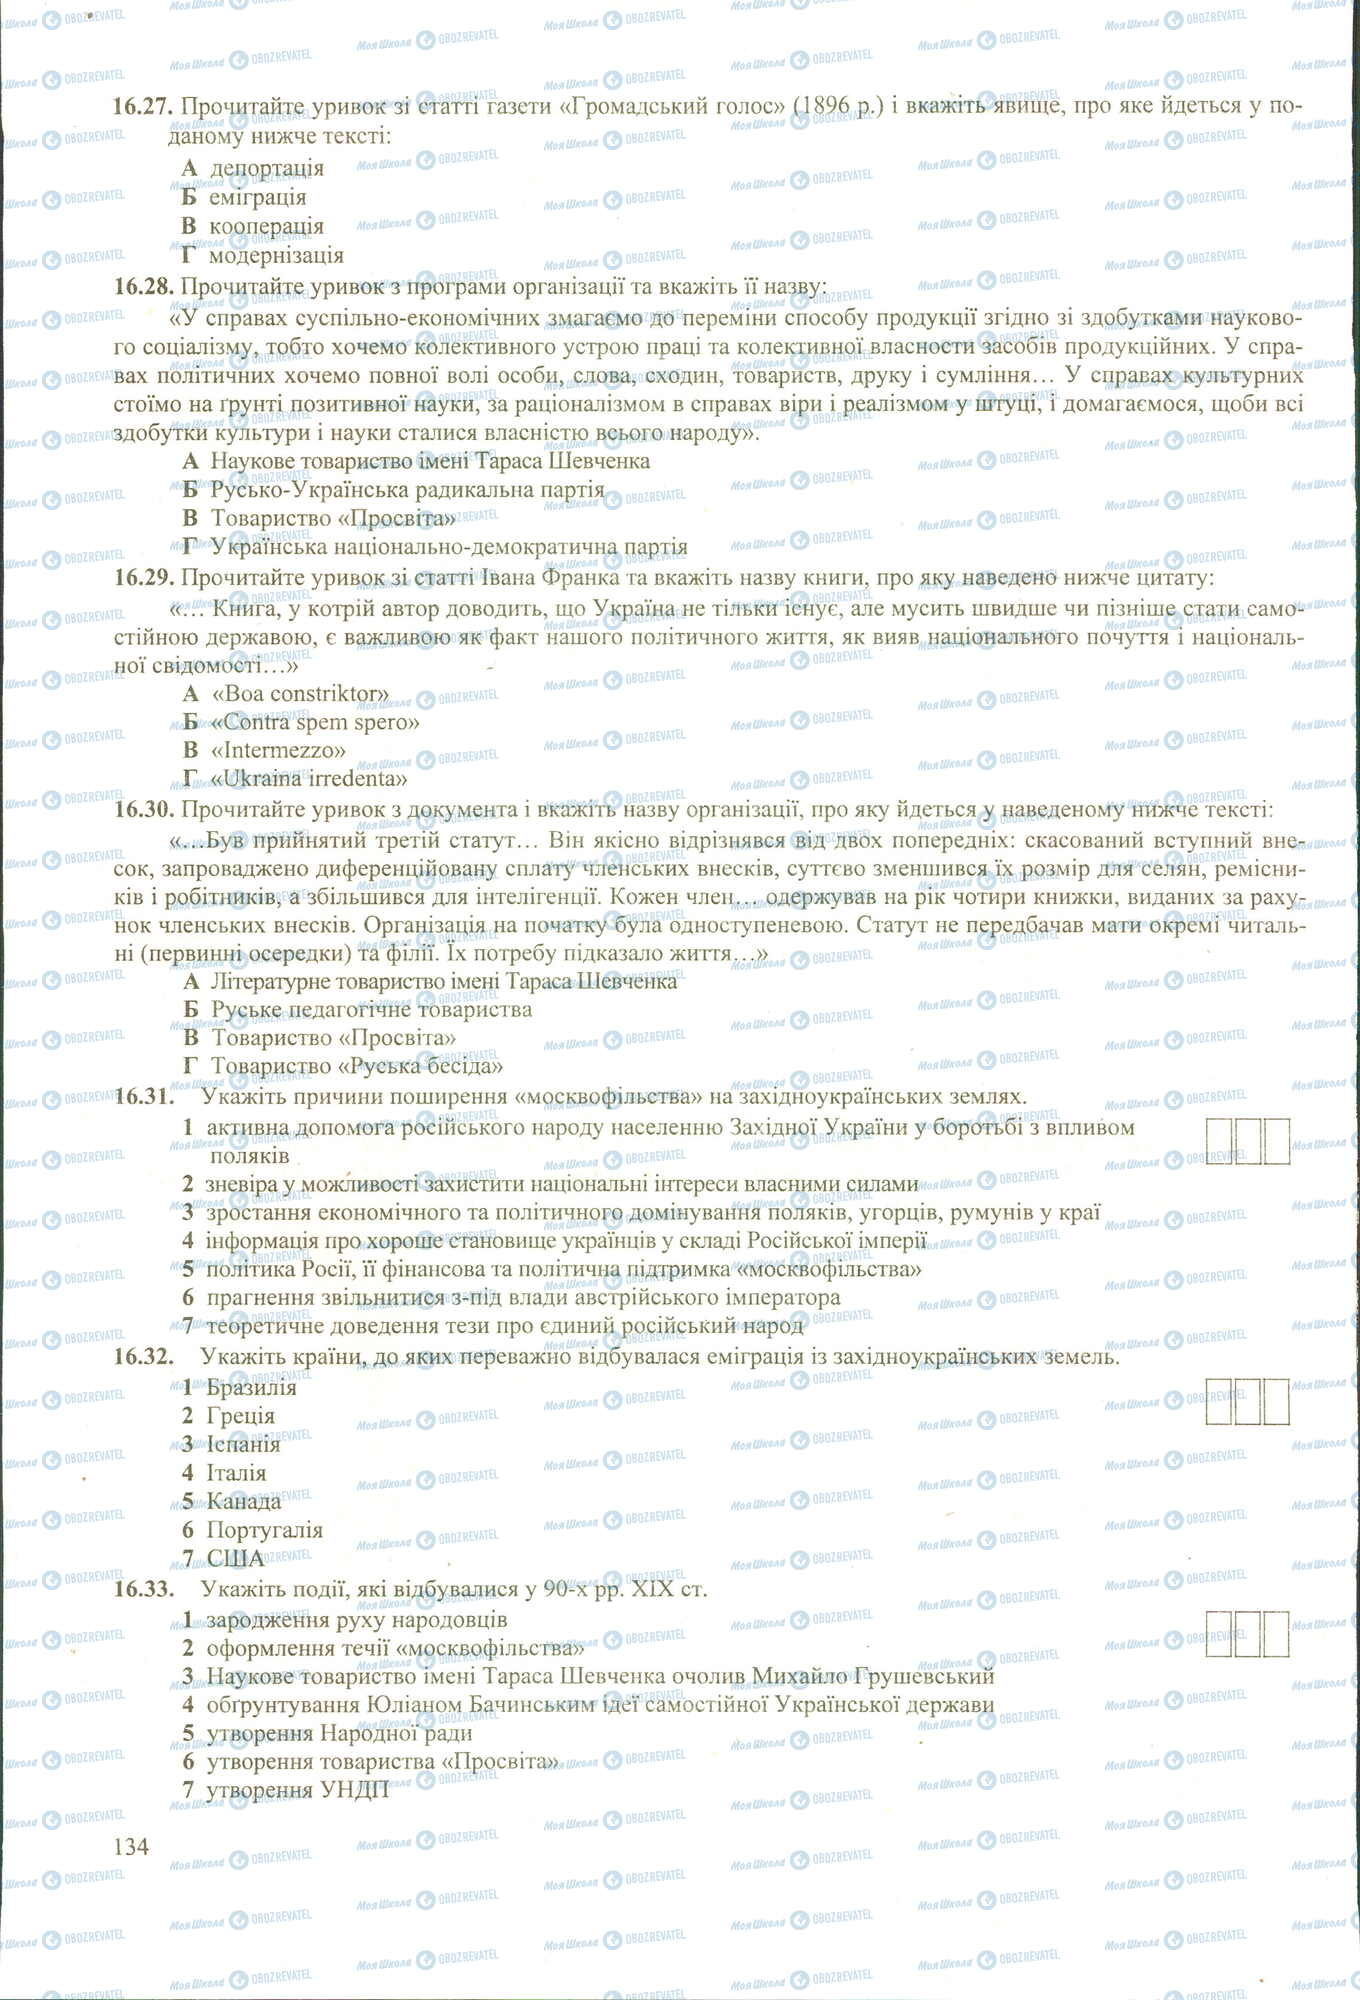 ЗНО История Украины 11 класс страница 27-33